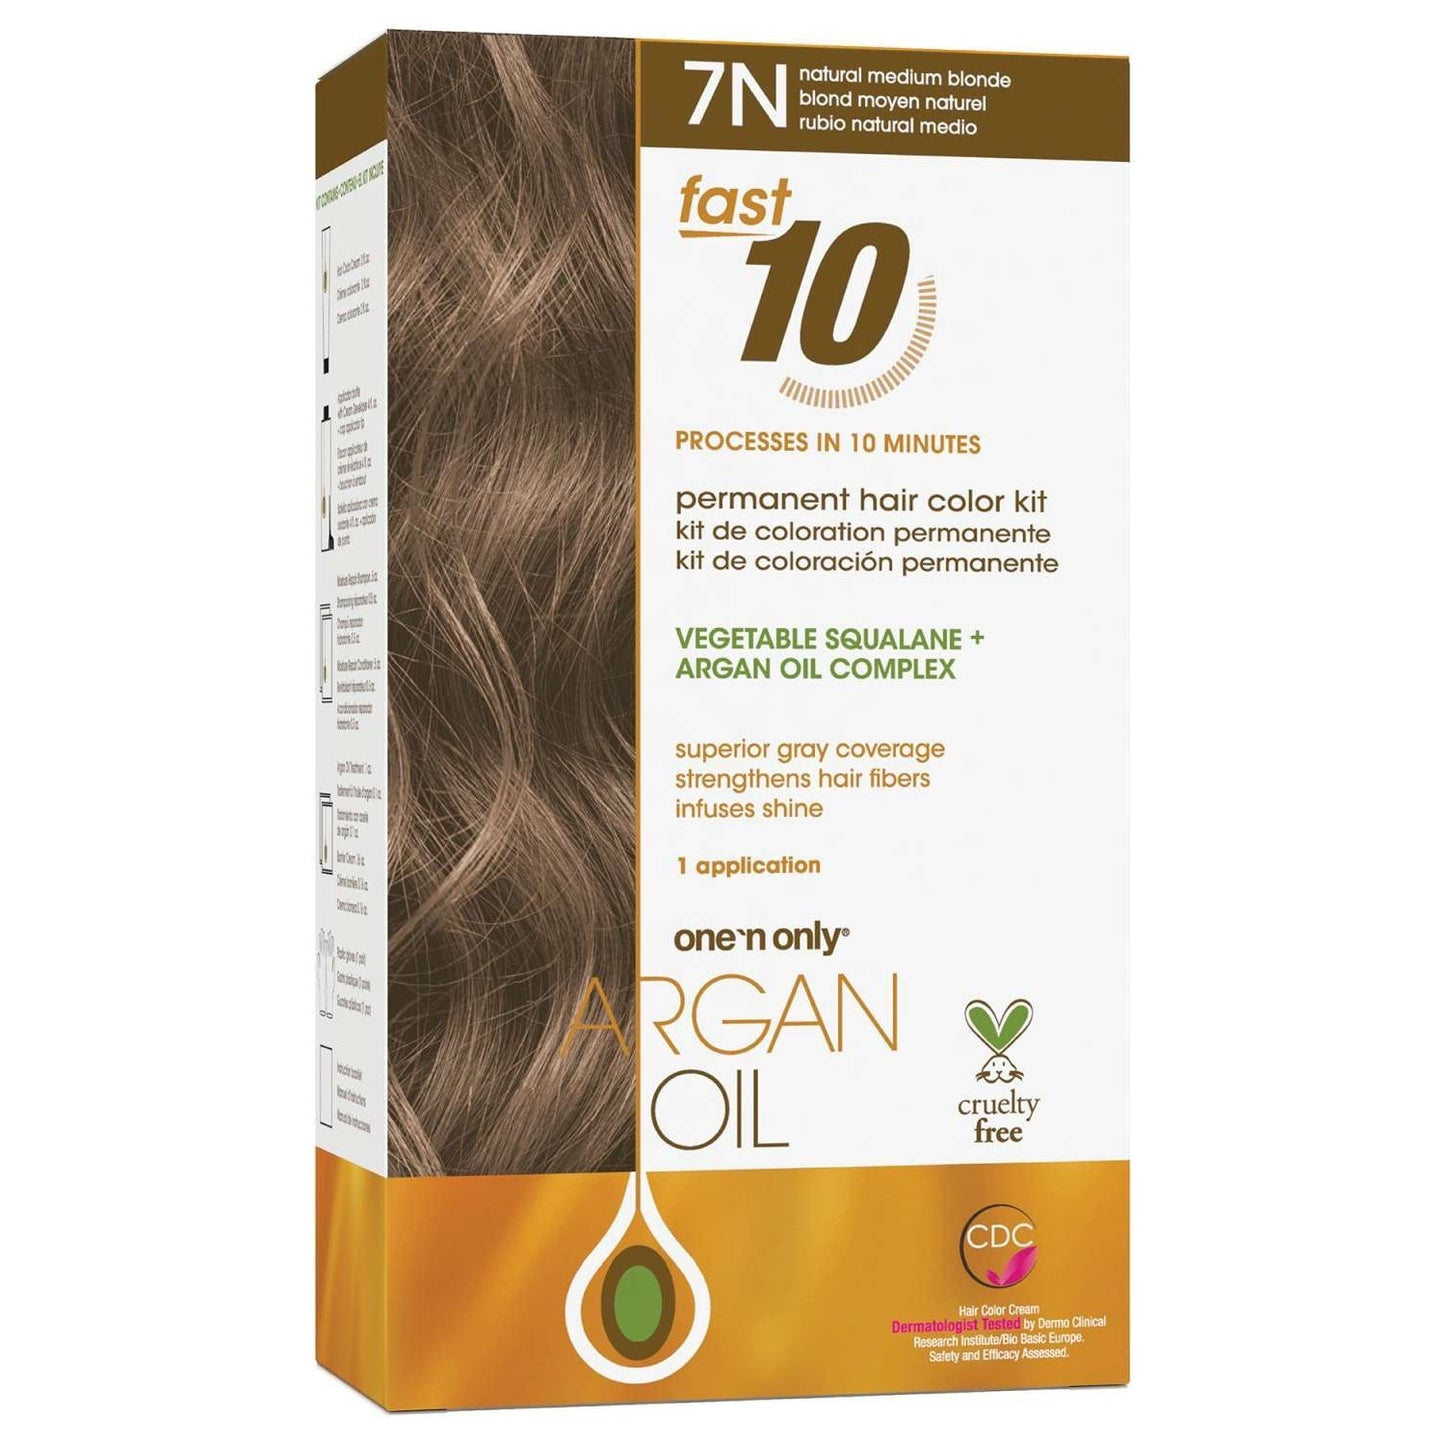 Argan Oil Fast 10 Permananent Hair Color Kit 7N Medium Blonde